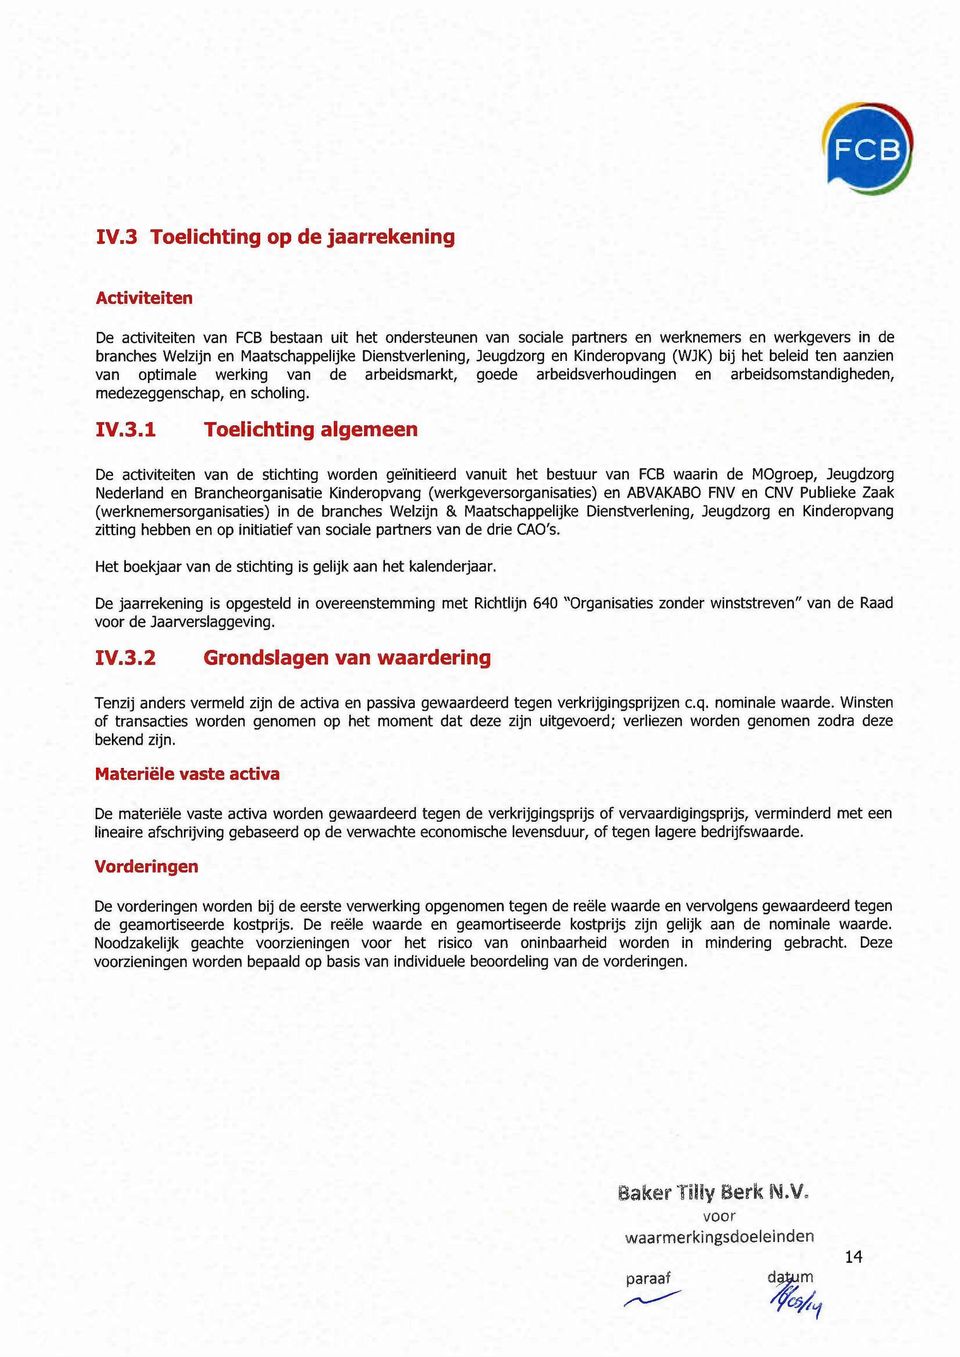 IV.3.1 Toelichting algemeen De activiteiten van de stichting worden geïnitieerd vanuit het bestuur van FCB waarin de MOgroep, Jeugdzorg Nederland en Brancheorganisatie Kinderopvang